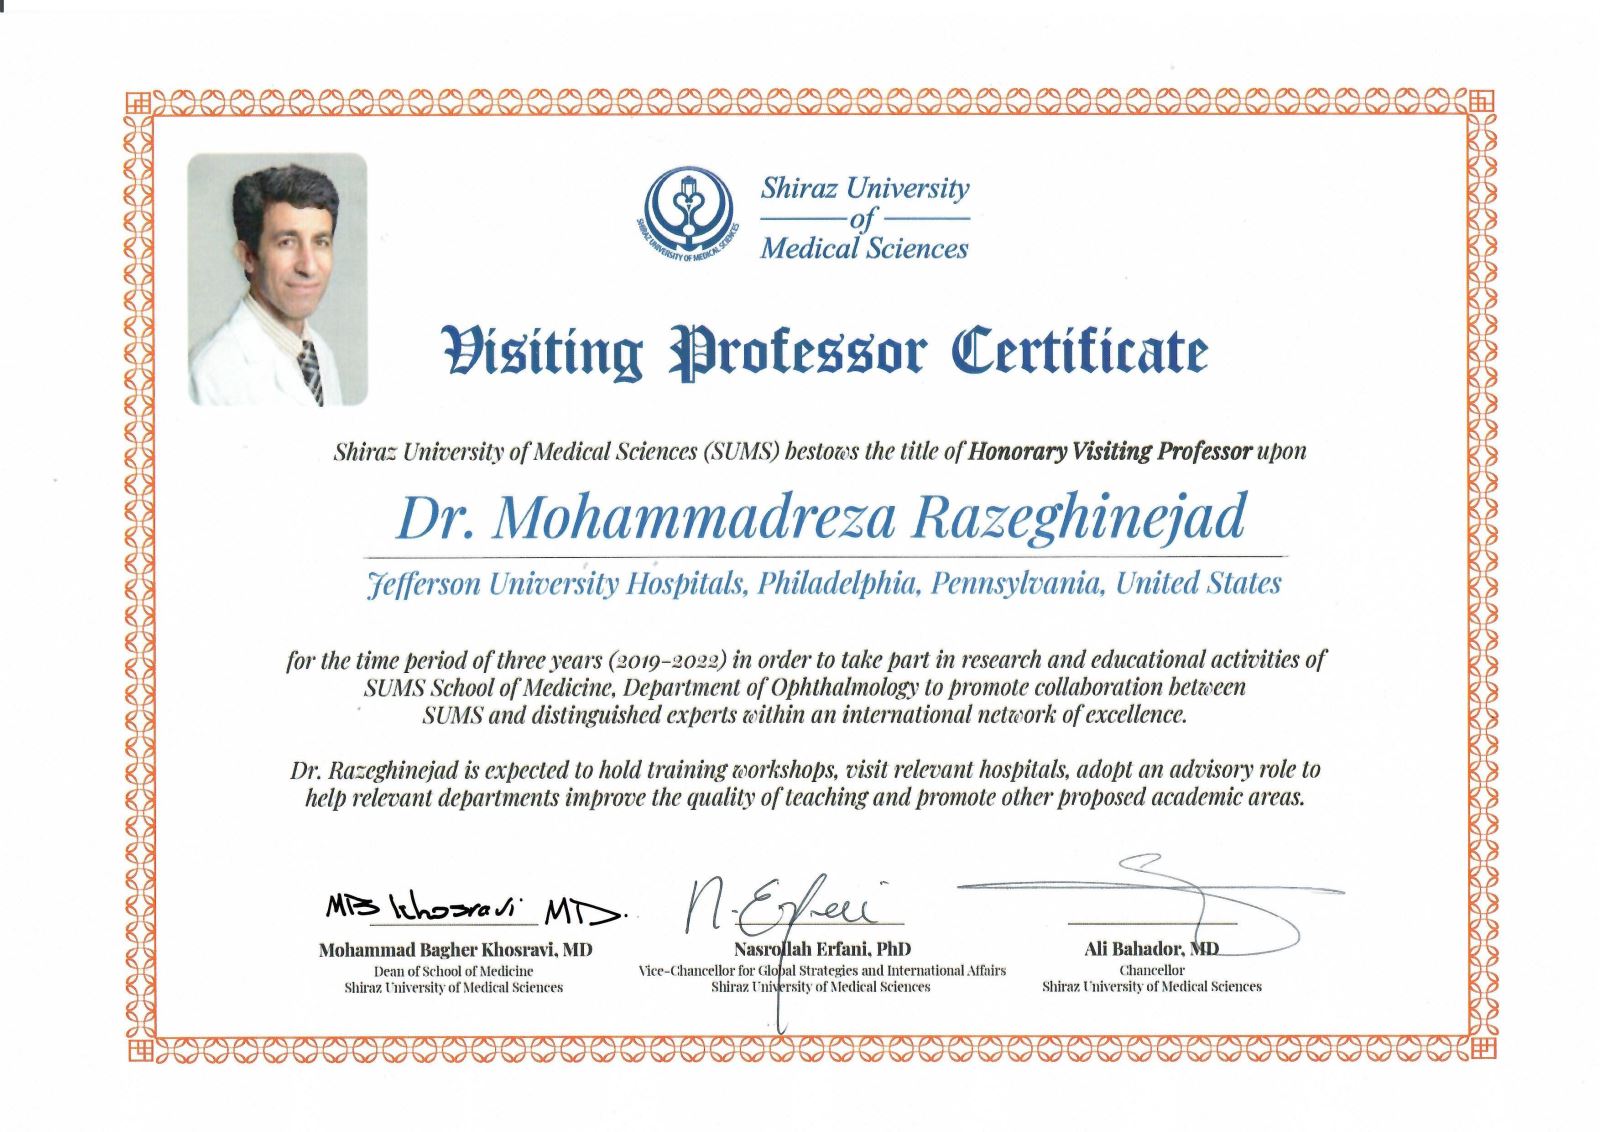 Dr. Mohammadreza Razeghinejad